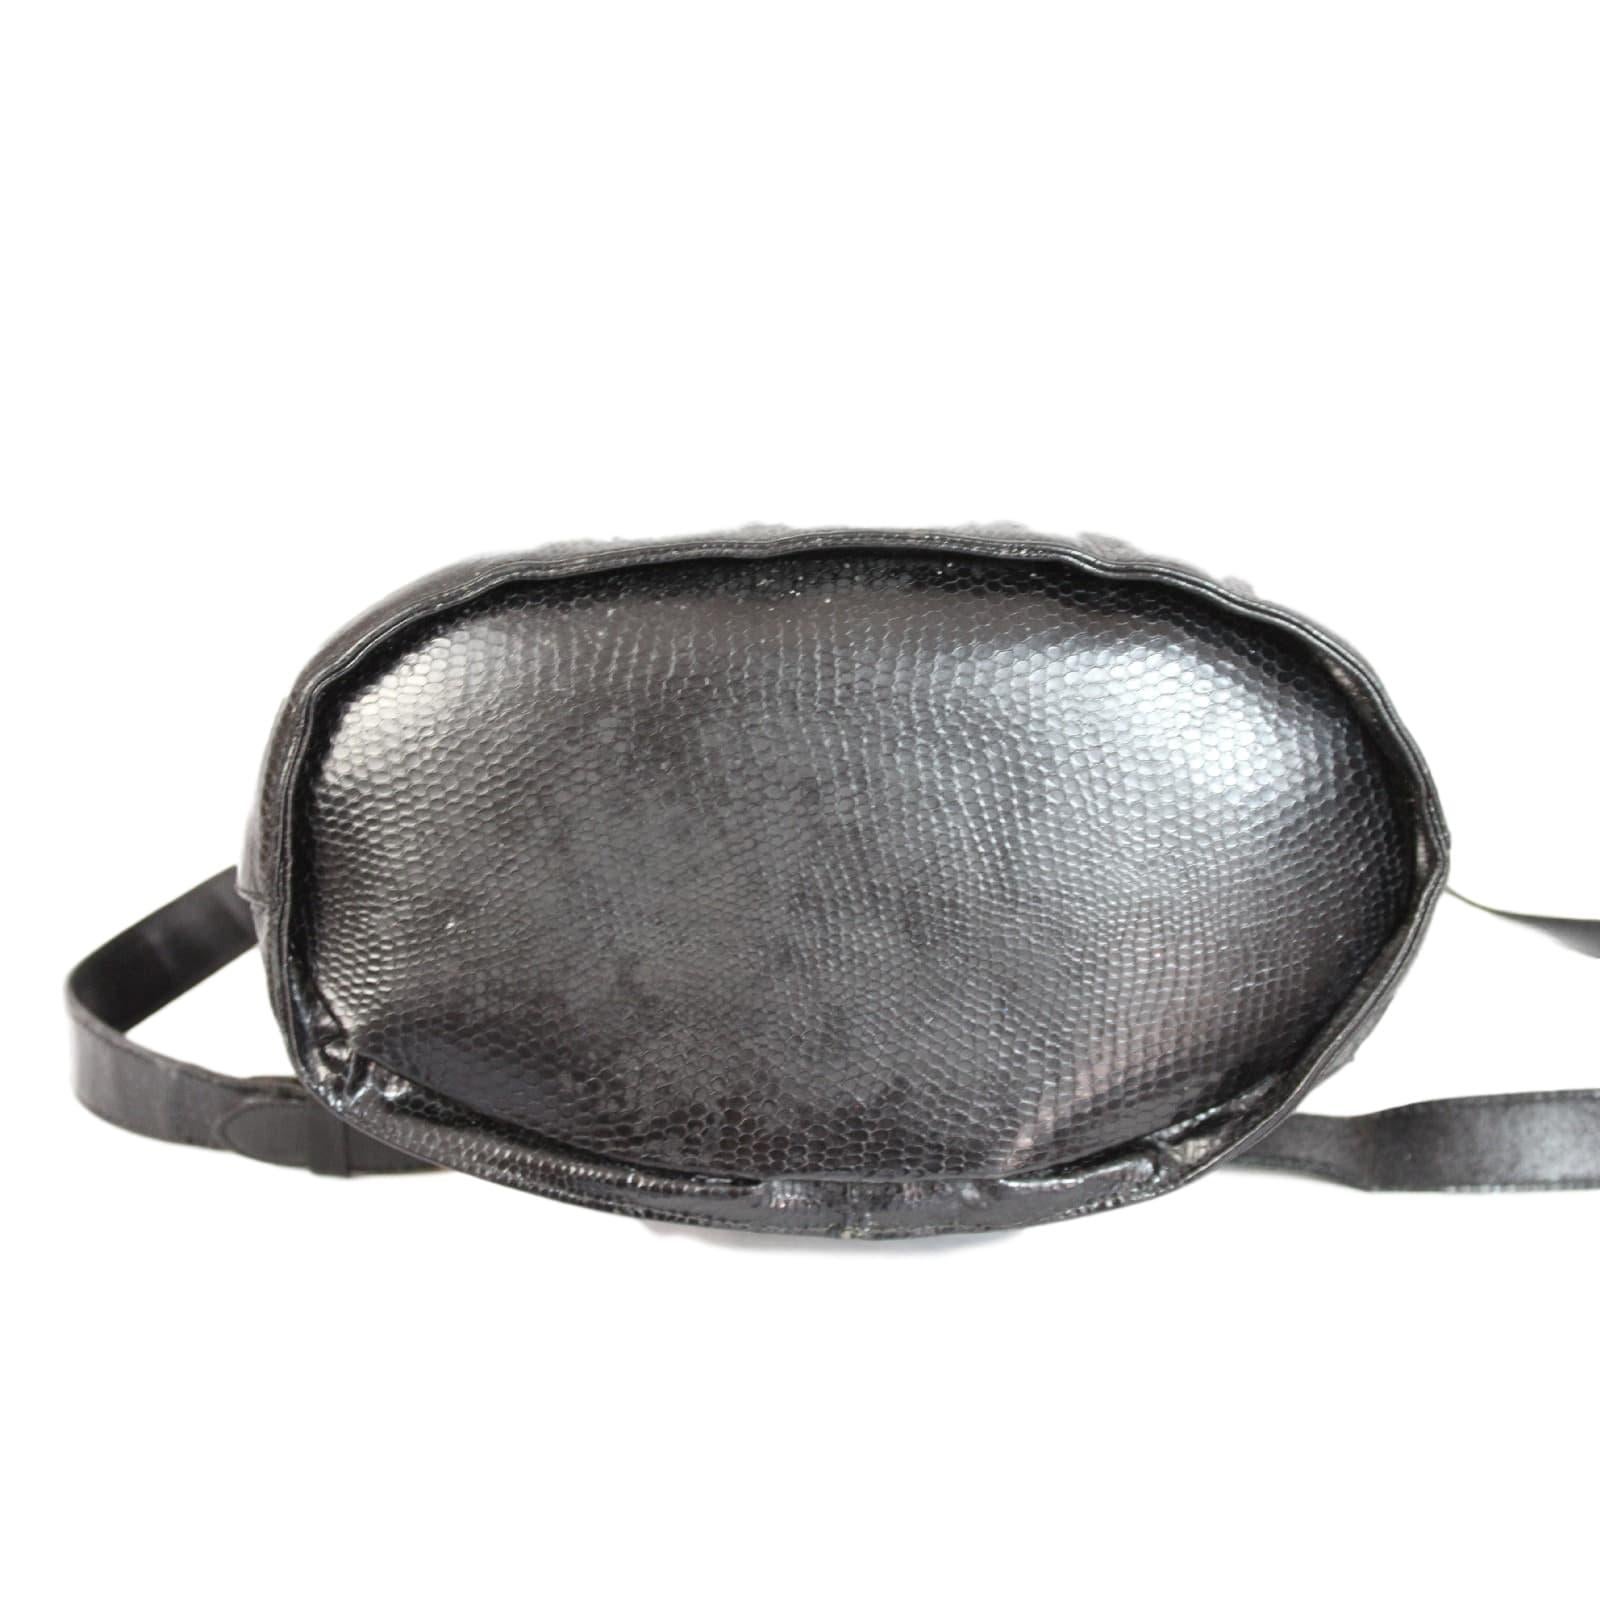 Women's 1980s Salvatore Ferragamo Black Python Skin Leather Bucket Bag